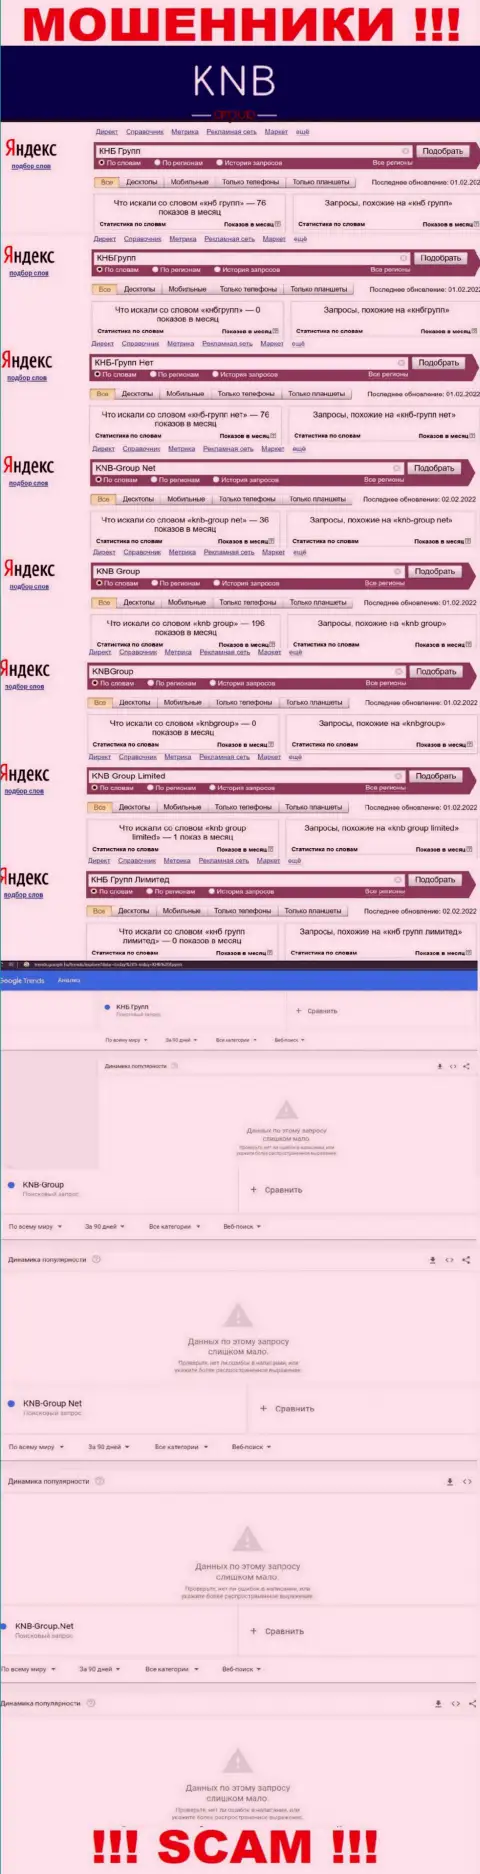 Скриншот результата online запросов по незаконно действующей организации KNB-Group Net